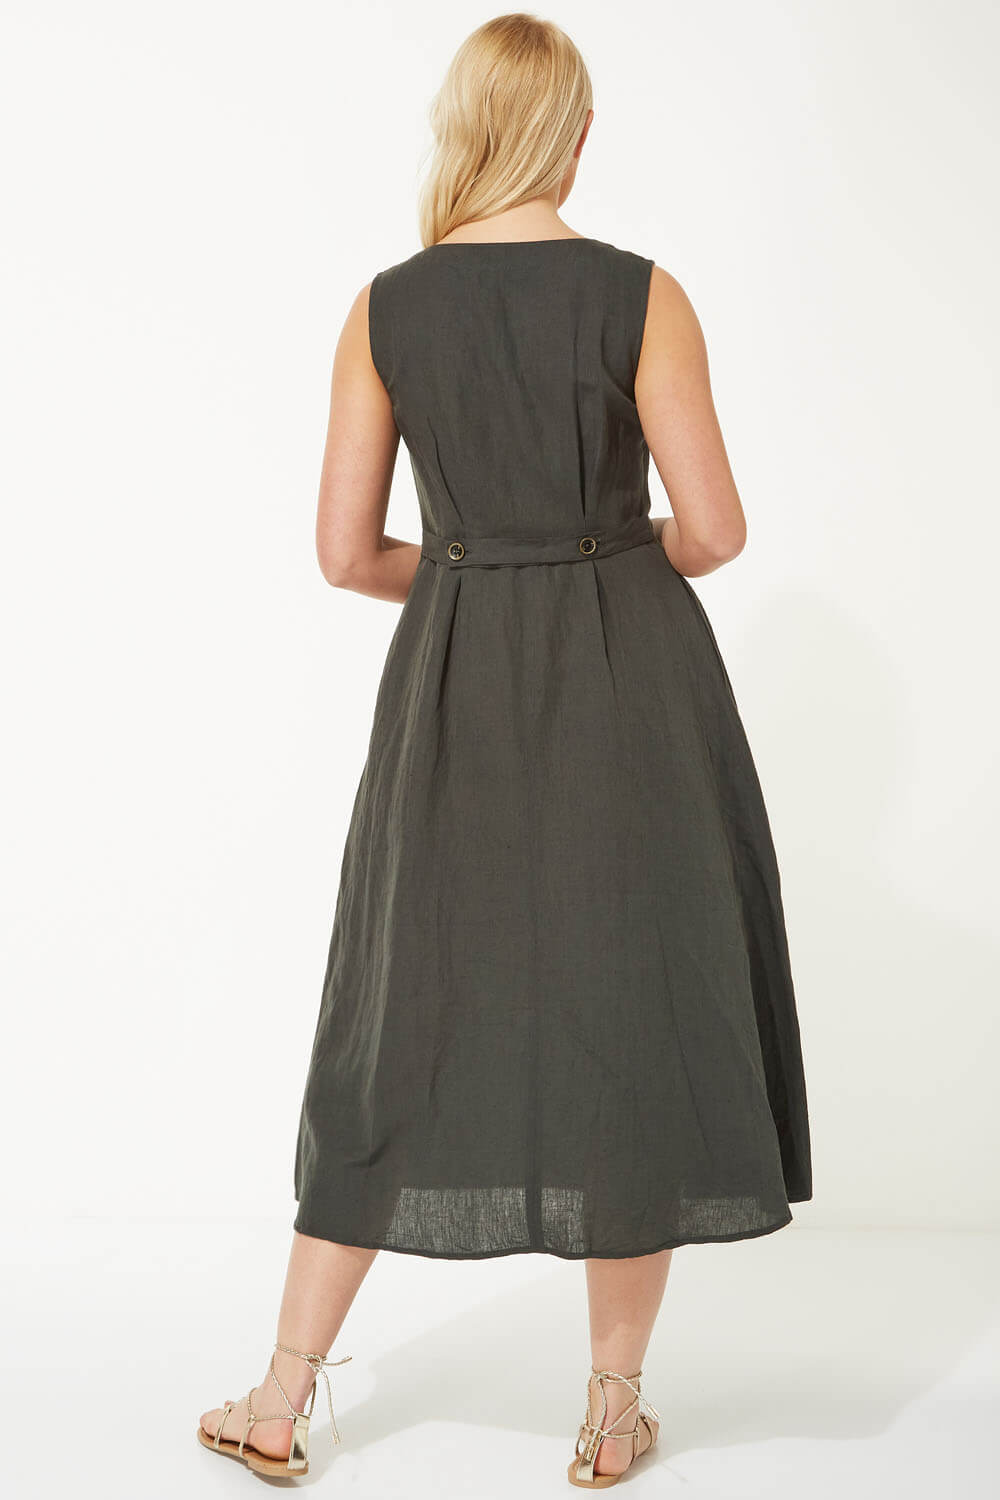 KHAKI Button Through Linen Midi Dress, Image 3 of 5